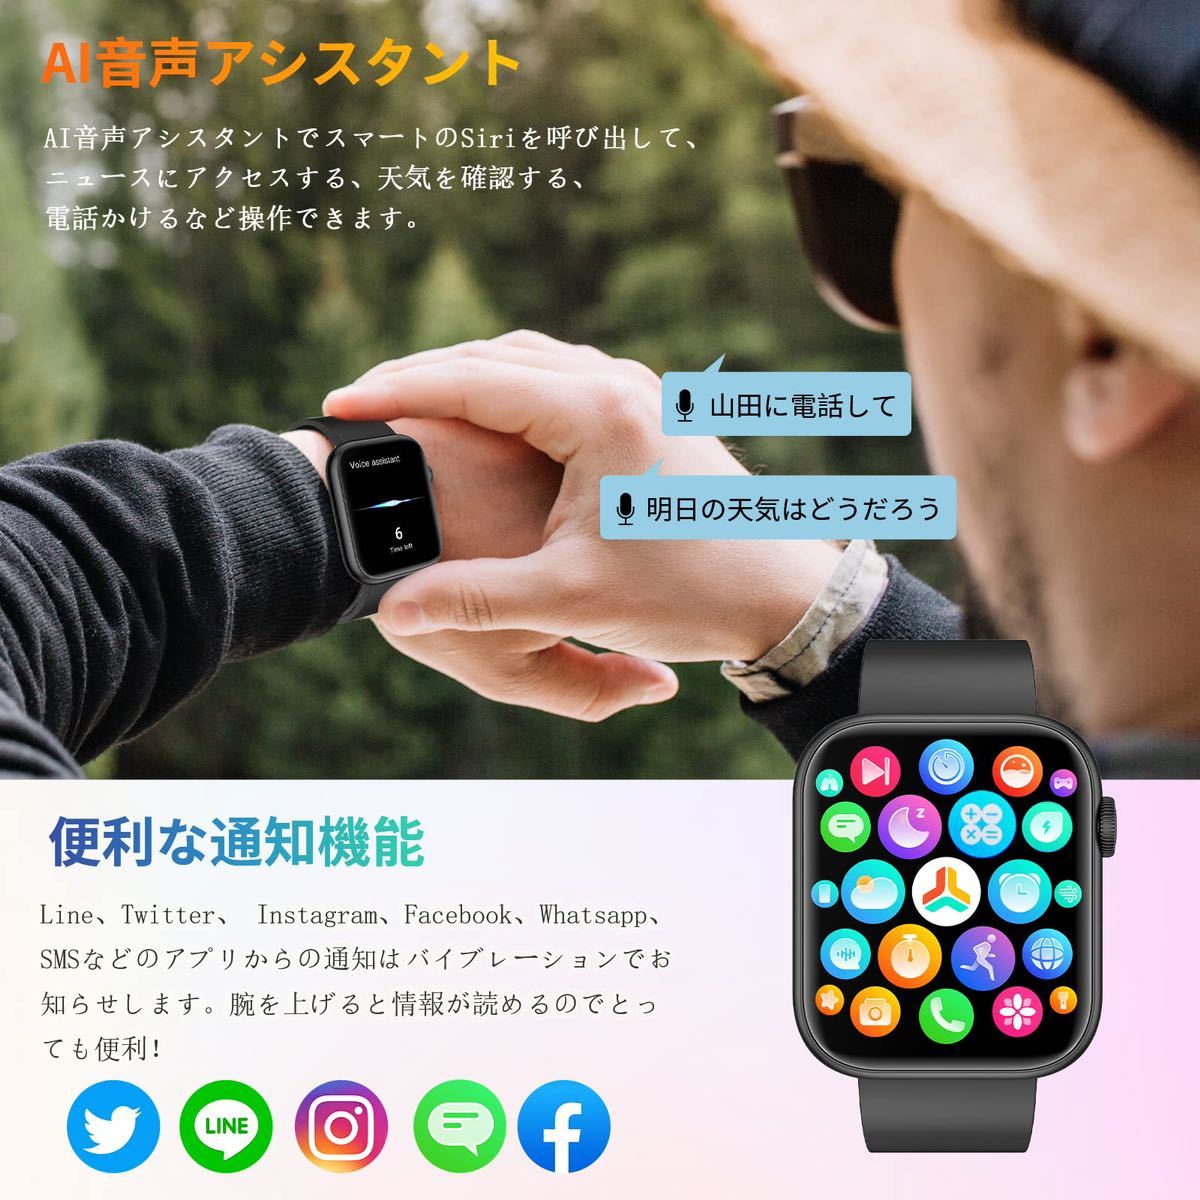 【送料無料】スマートウォッチ Bluetooth5.2通話機能付き 1.85インチ大画面 Smart Watch 腕時計 スポーツウォッチ (ブラック)《A81》